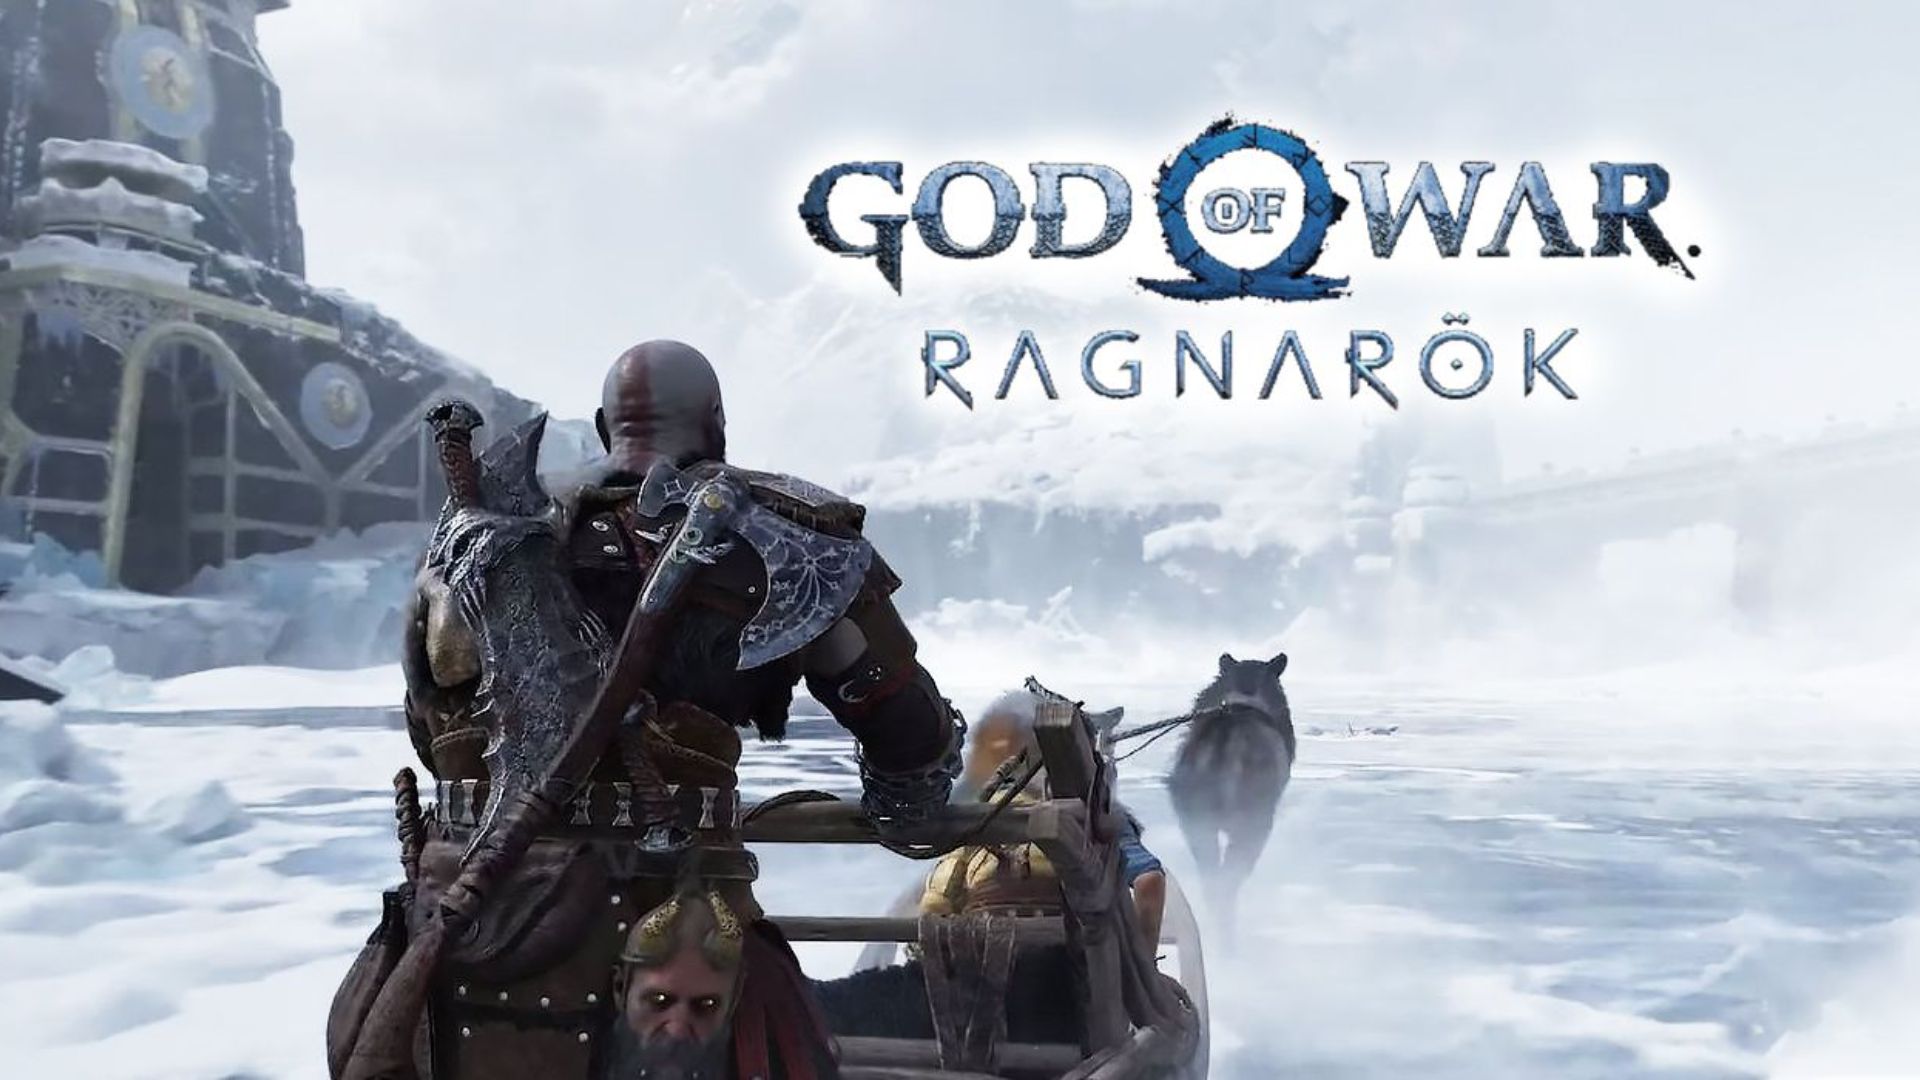 God of War Ragnarok Wallpapers - Top 25 Best God of War Ragnarok